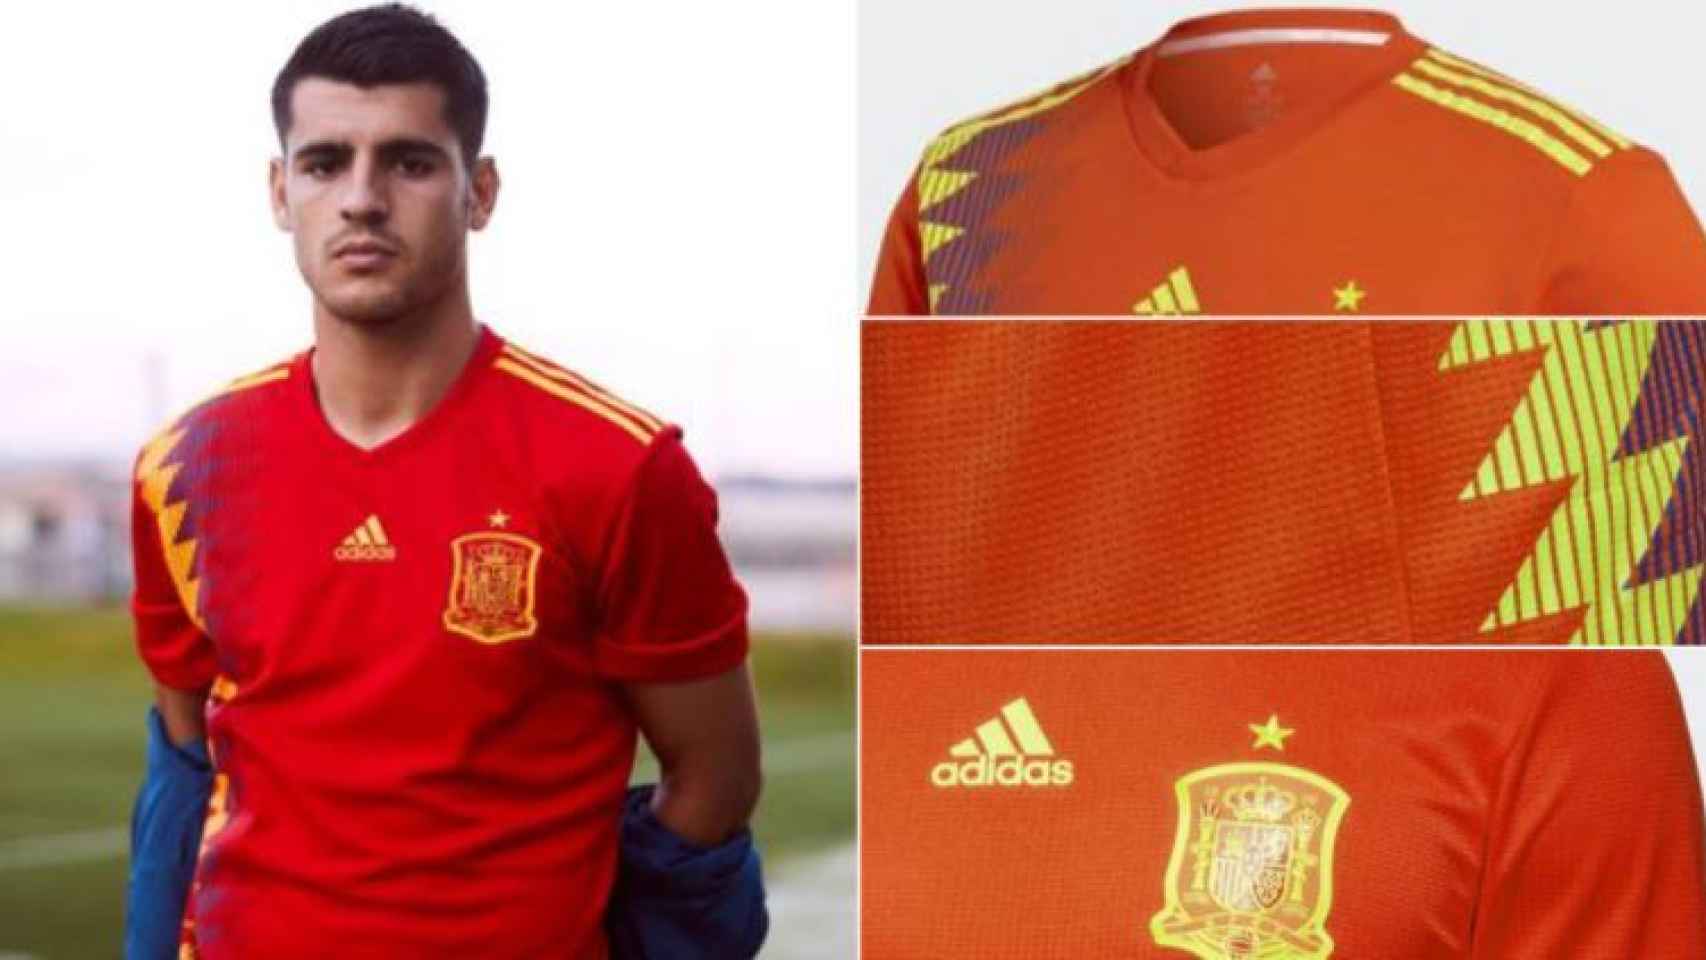 Camiseta roja y oro España, Selección camiseta oficial